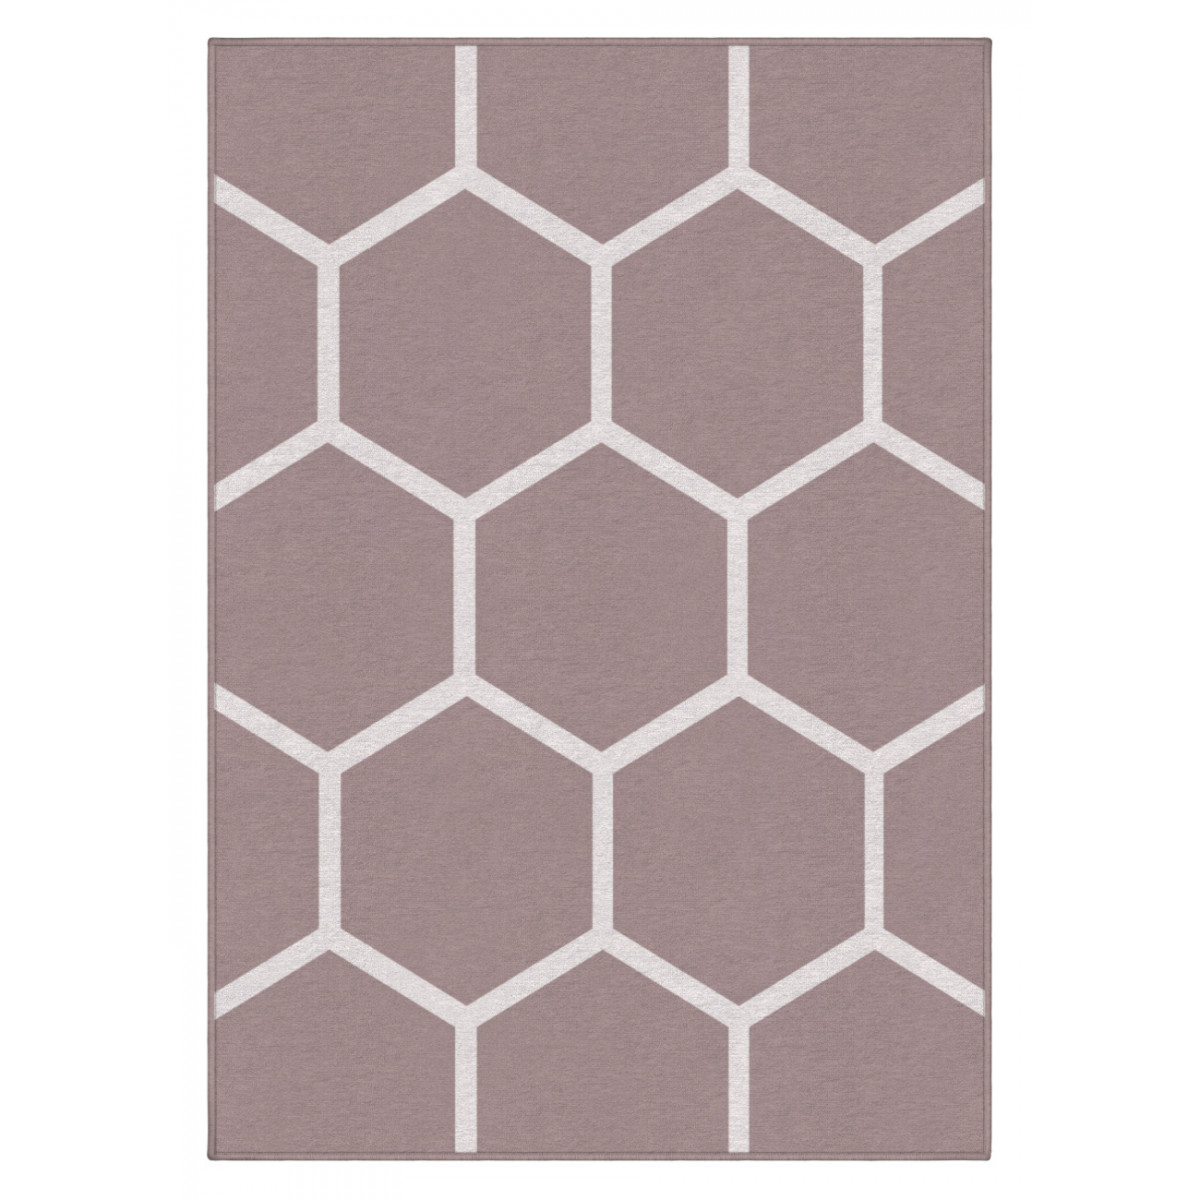 Dizajnový kusový koberec Honeycomb od Jindřicha Lípy